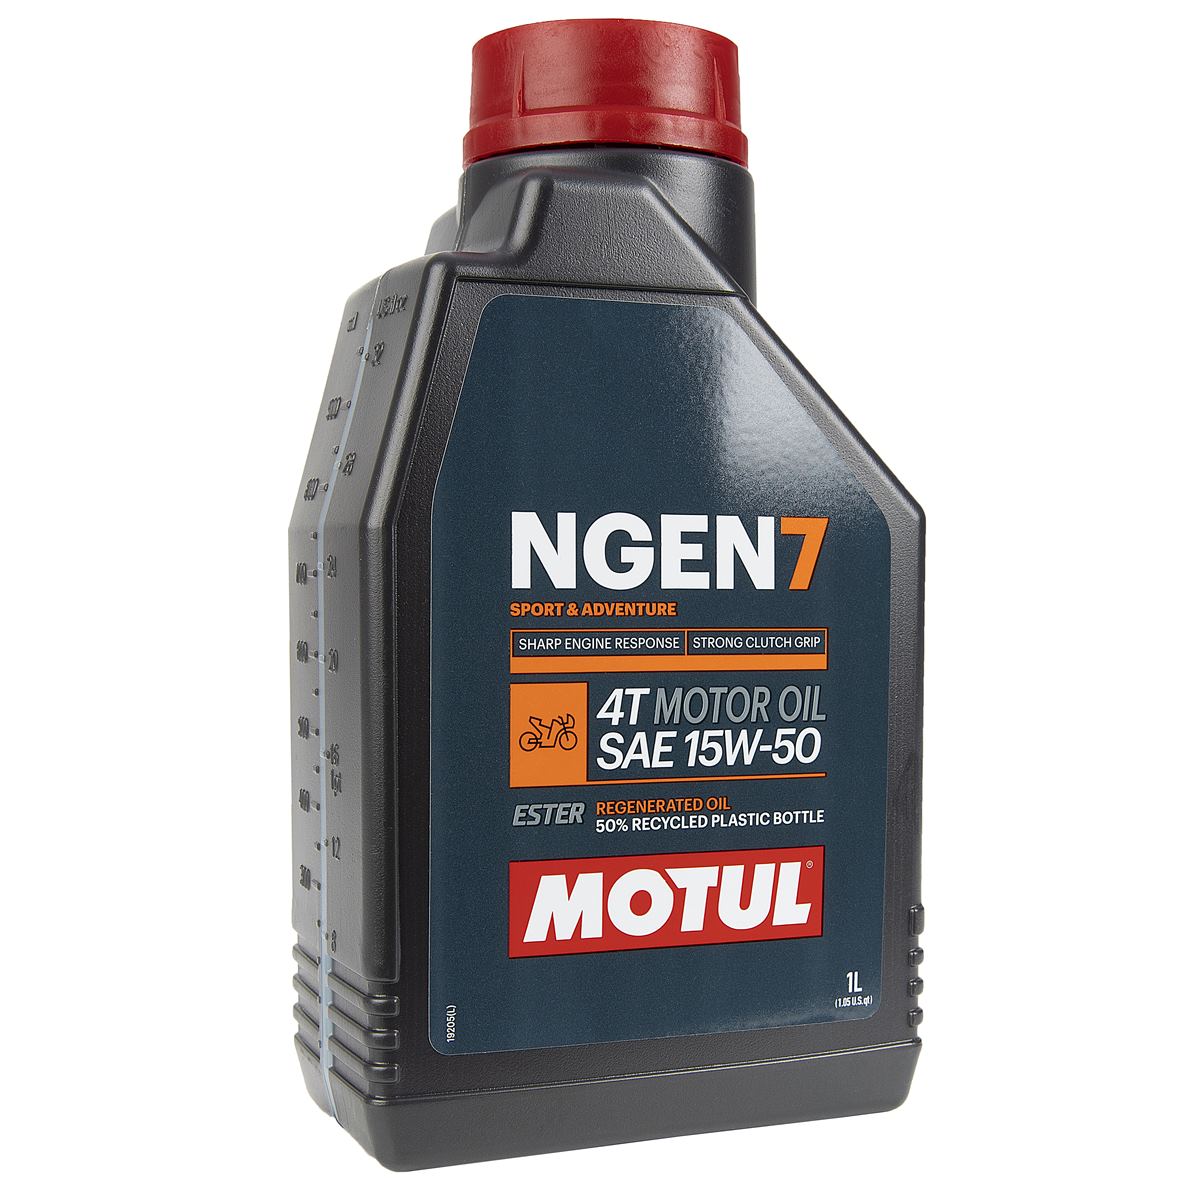 Motul Motor Oil NGEN 7 15W50, 1 Liter